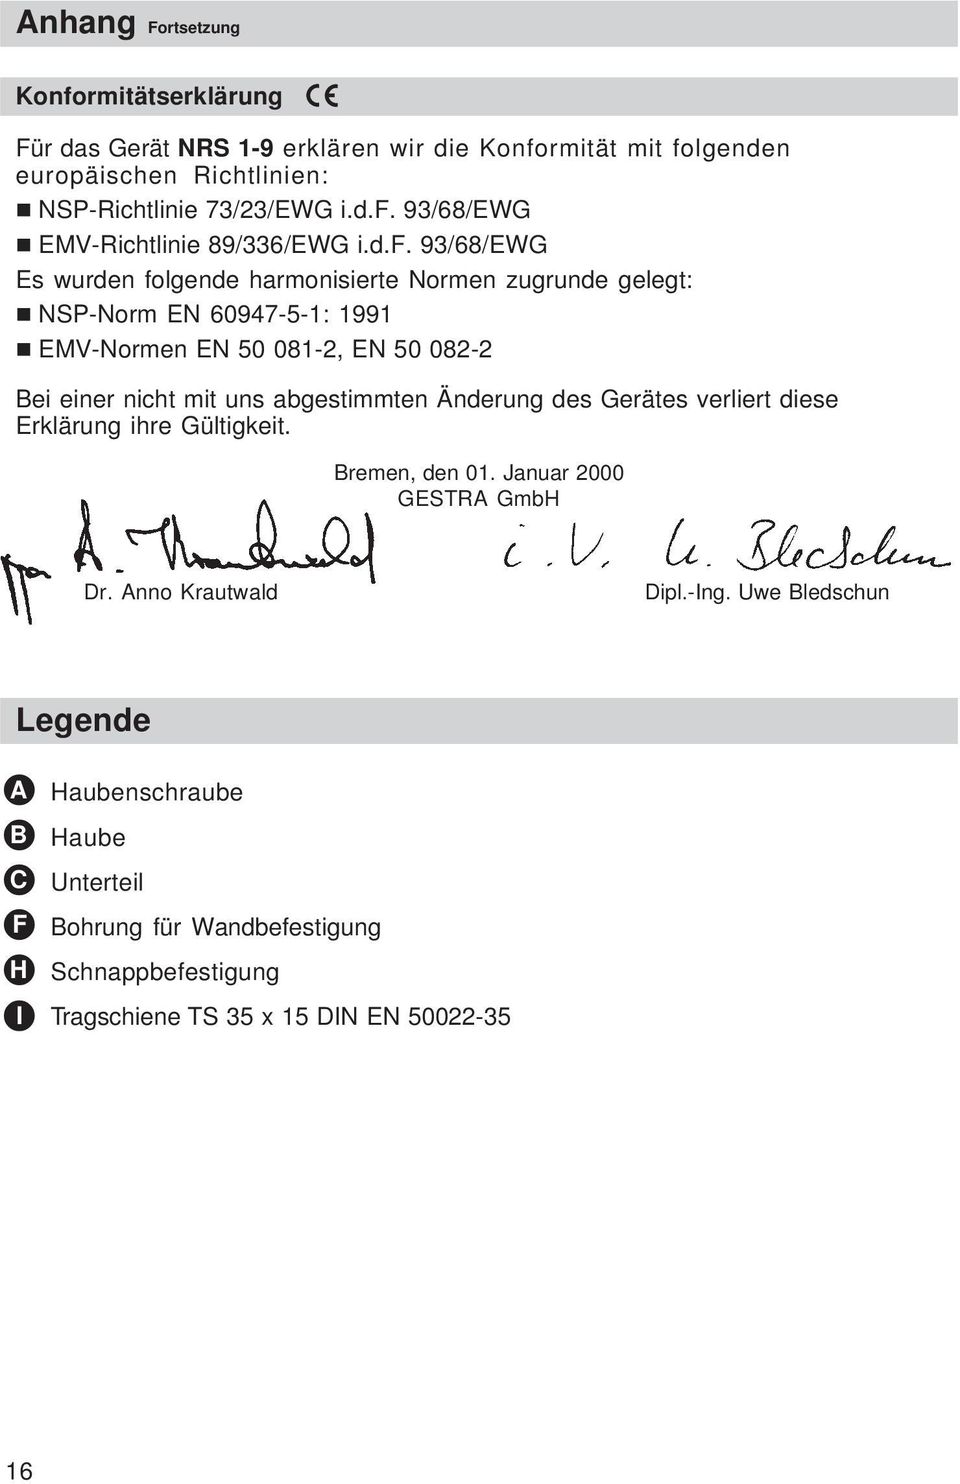 abgestimmten Änderung des Gerätes verliert diese Erklärung ihre Gültigkeit. Bremen, den 01. Januar 2000 GESTRA GmbH Dr. Anno Krautwald Dipl.-Ing.